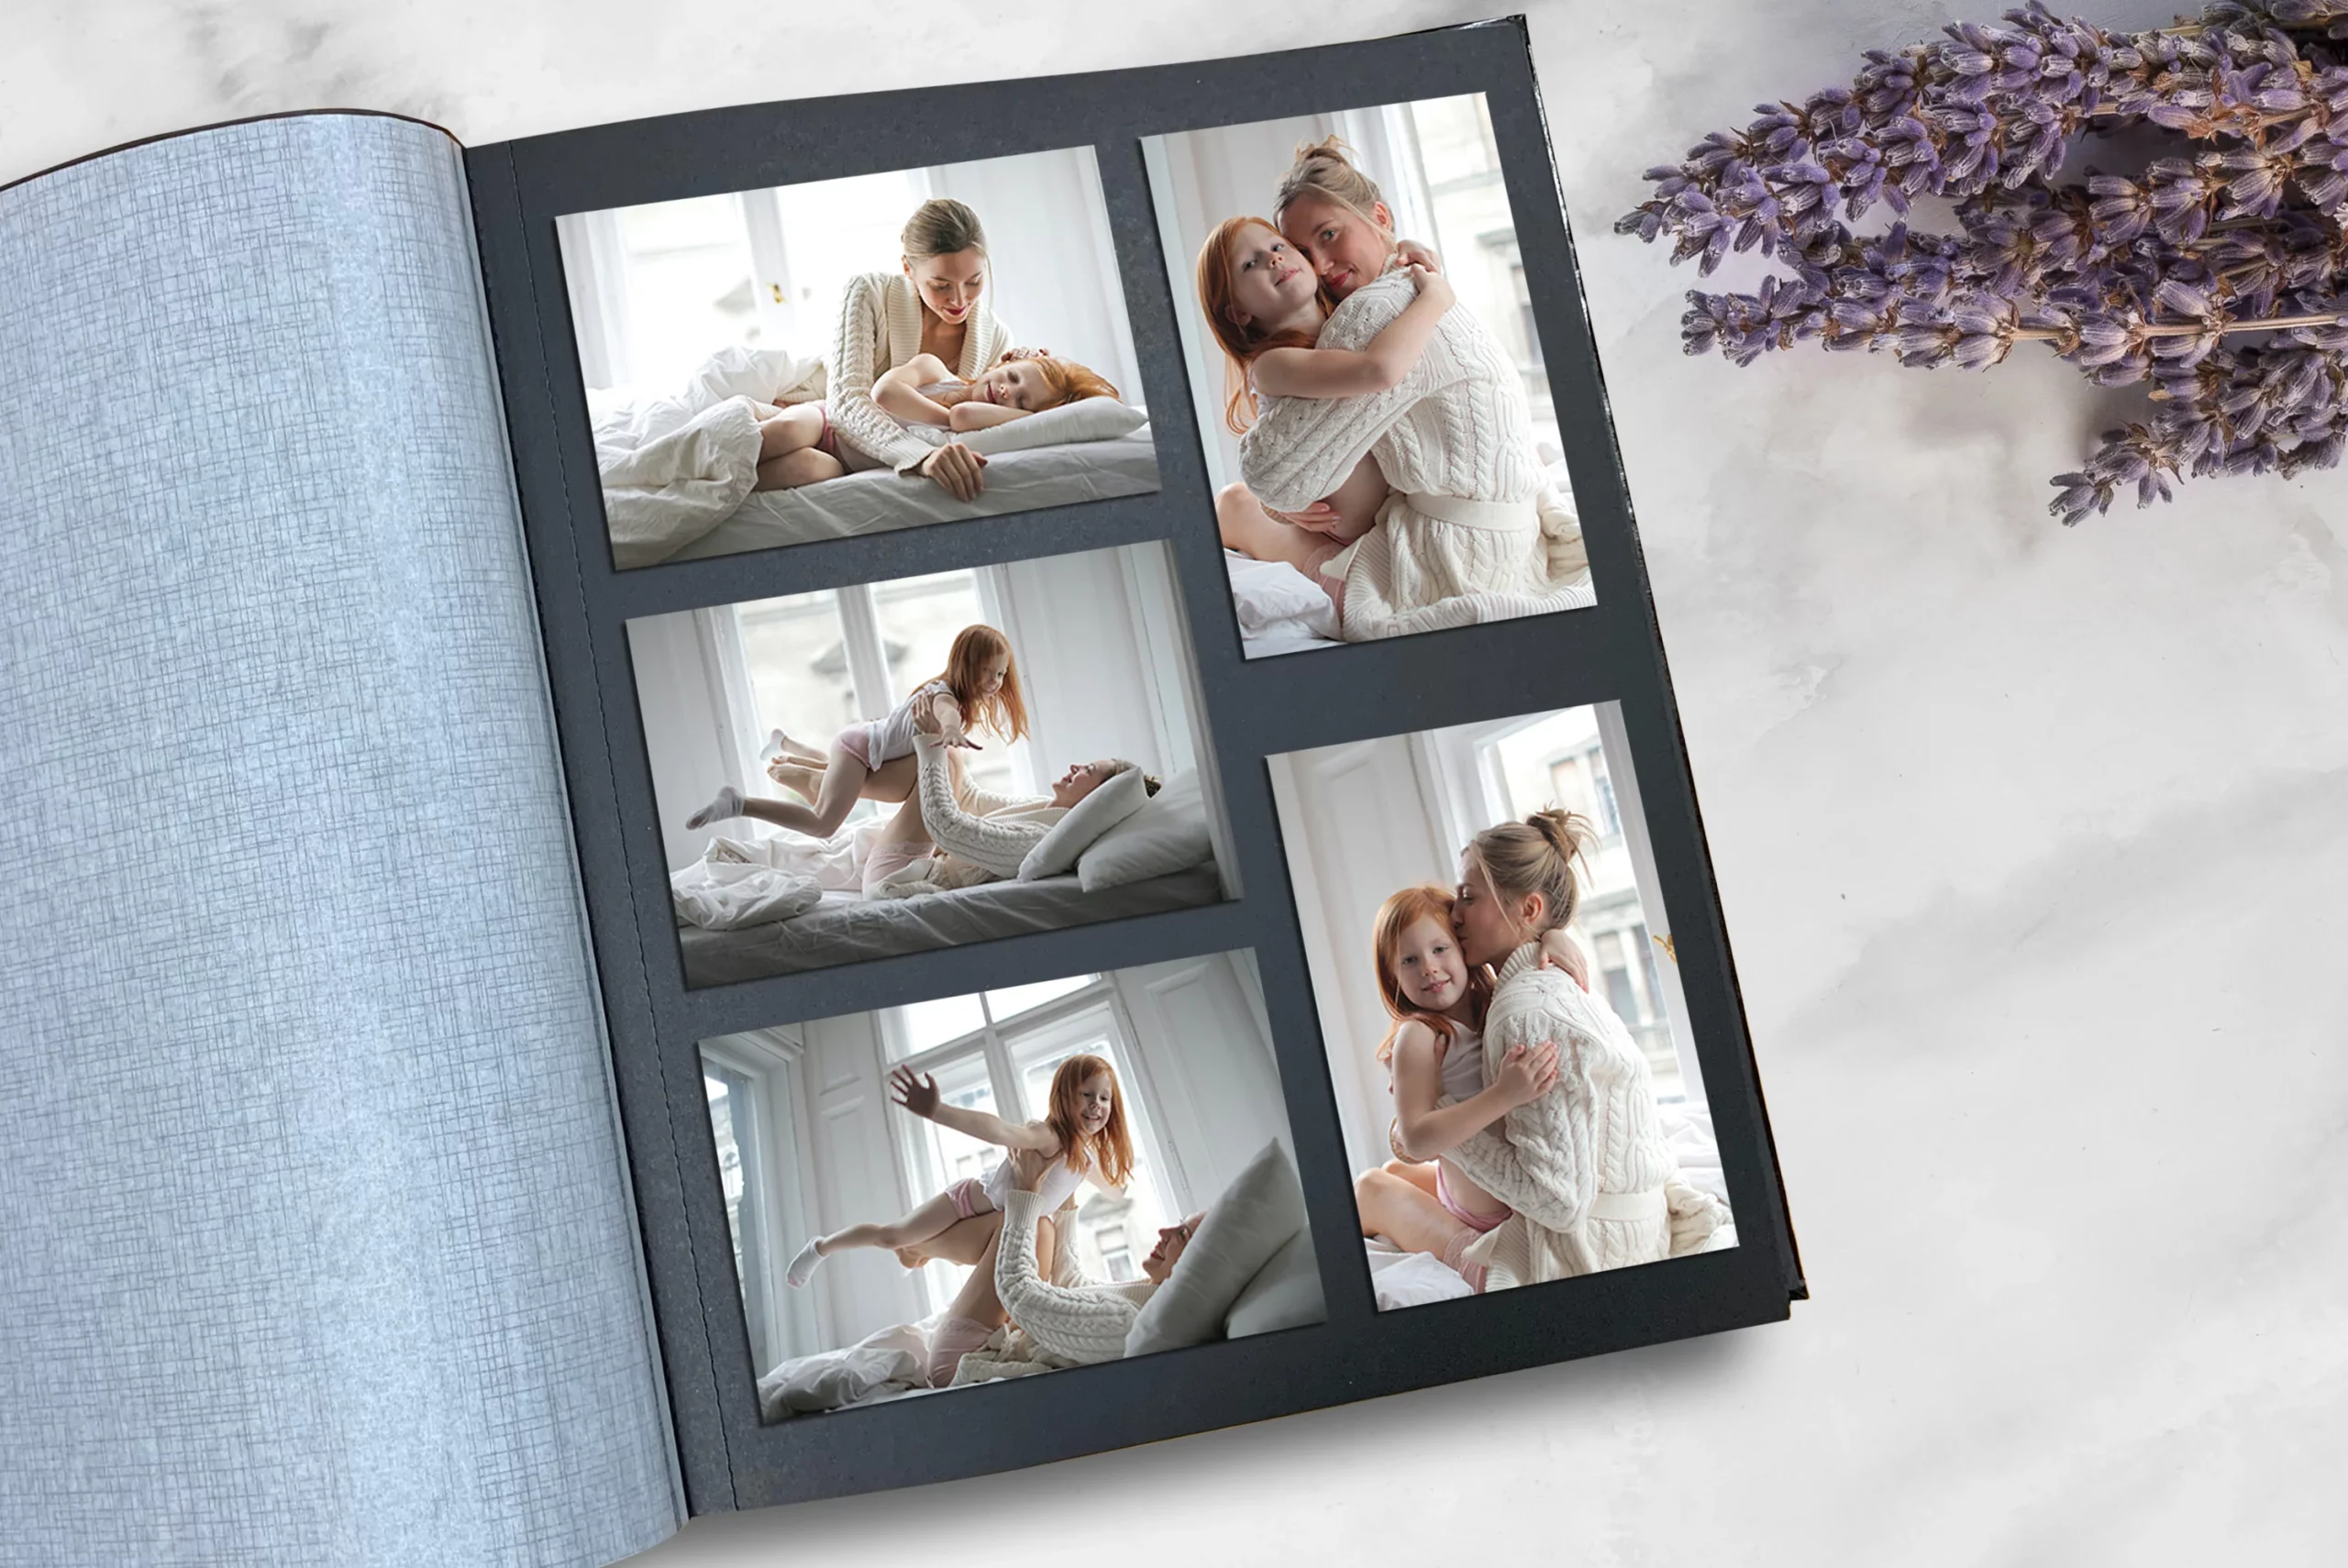 Cherish The Memories: Shutterfly Photo Books - The Mom Edit